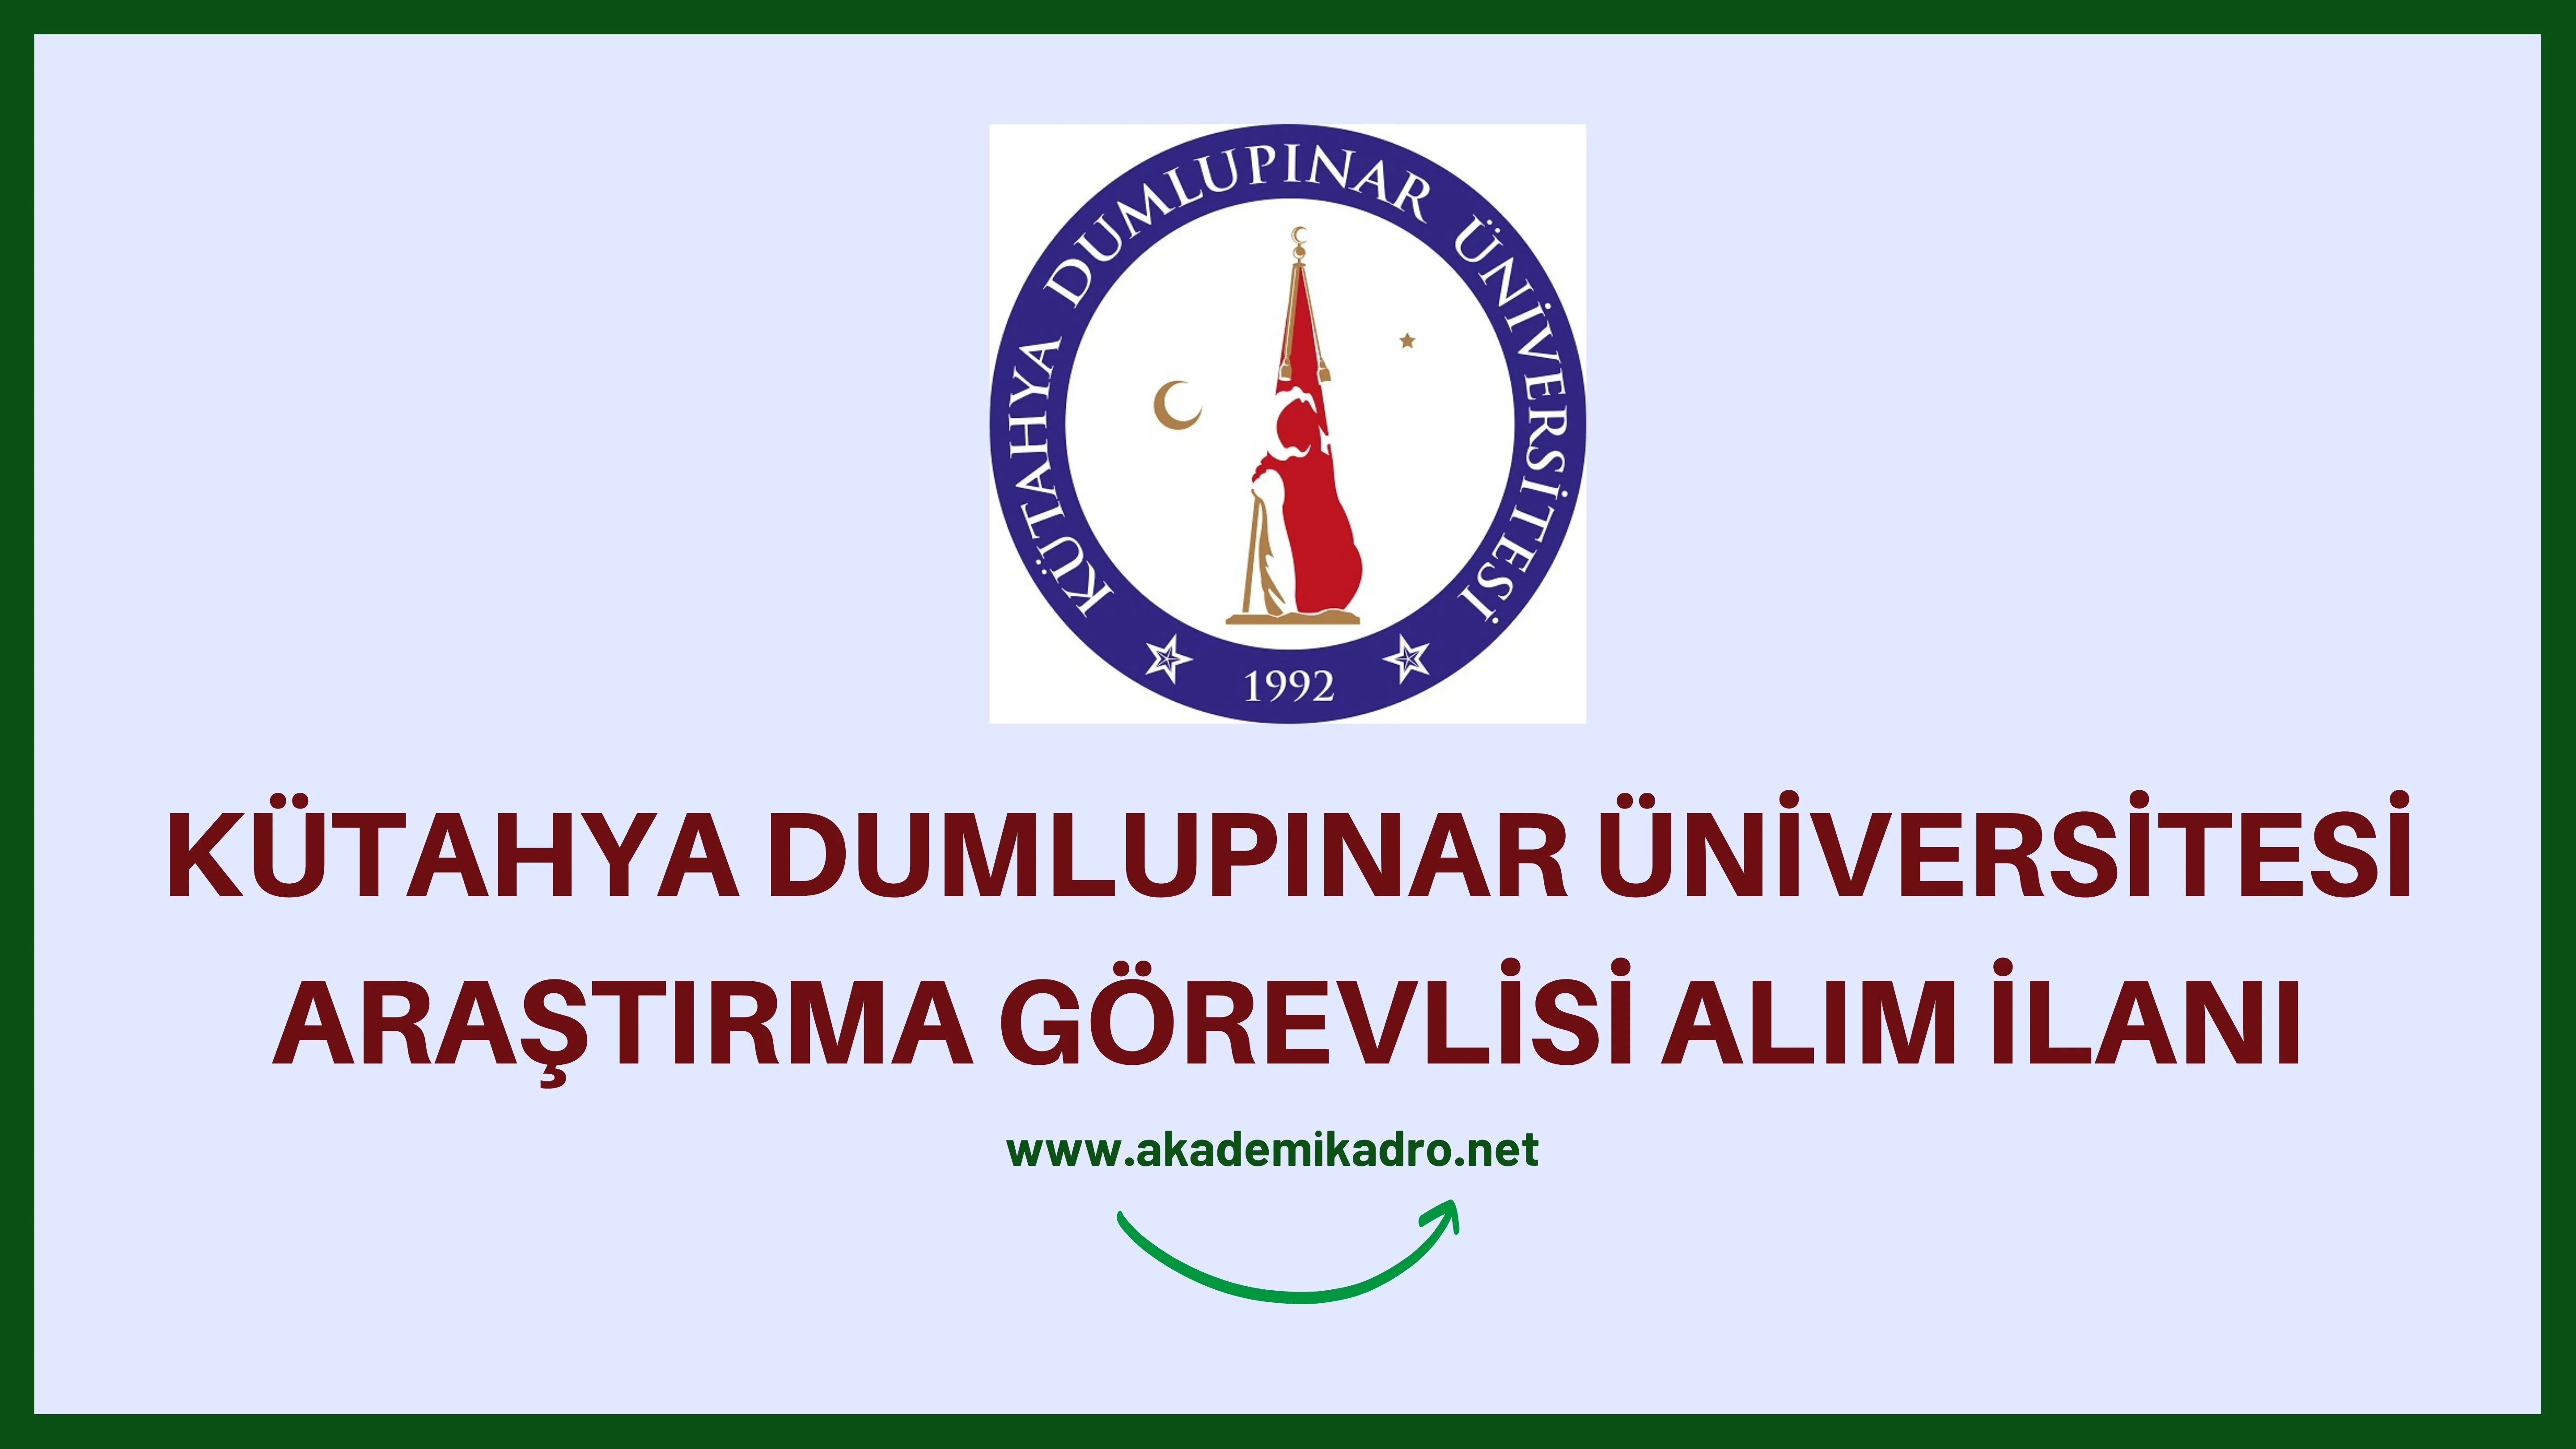 Kütahya Dumlupınar Üniversitesi 4 Araştırma görevlisi alacaktır. Son başvuru tarihi 07 Kasım 2022.